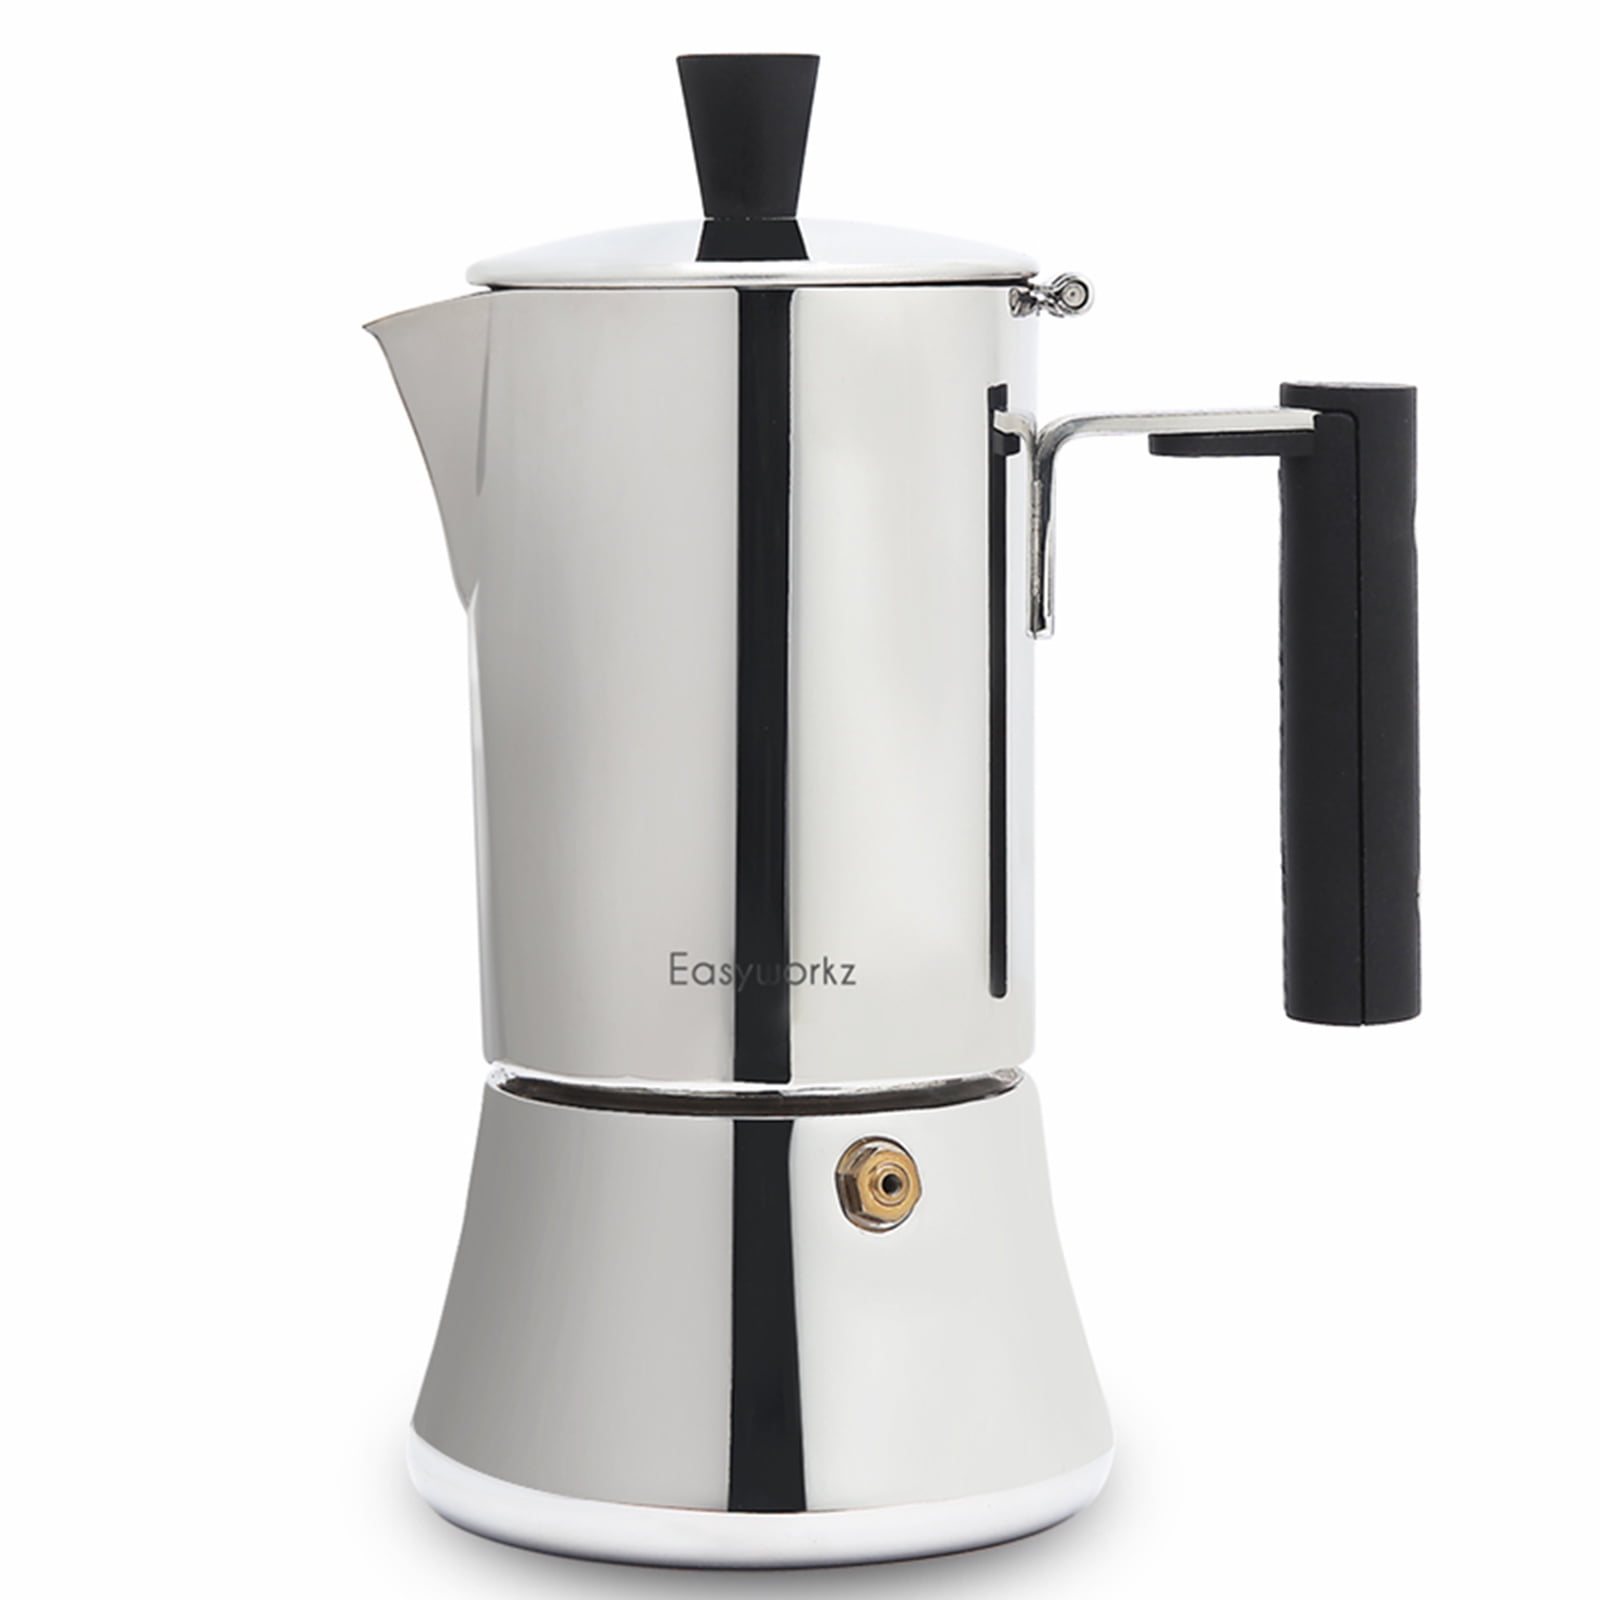 Grosche Milano Moka Stovetop Espresso Coffee Maker - White (GR354)  682858075364